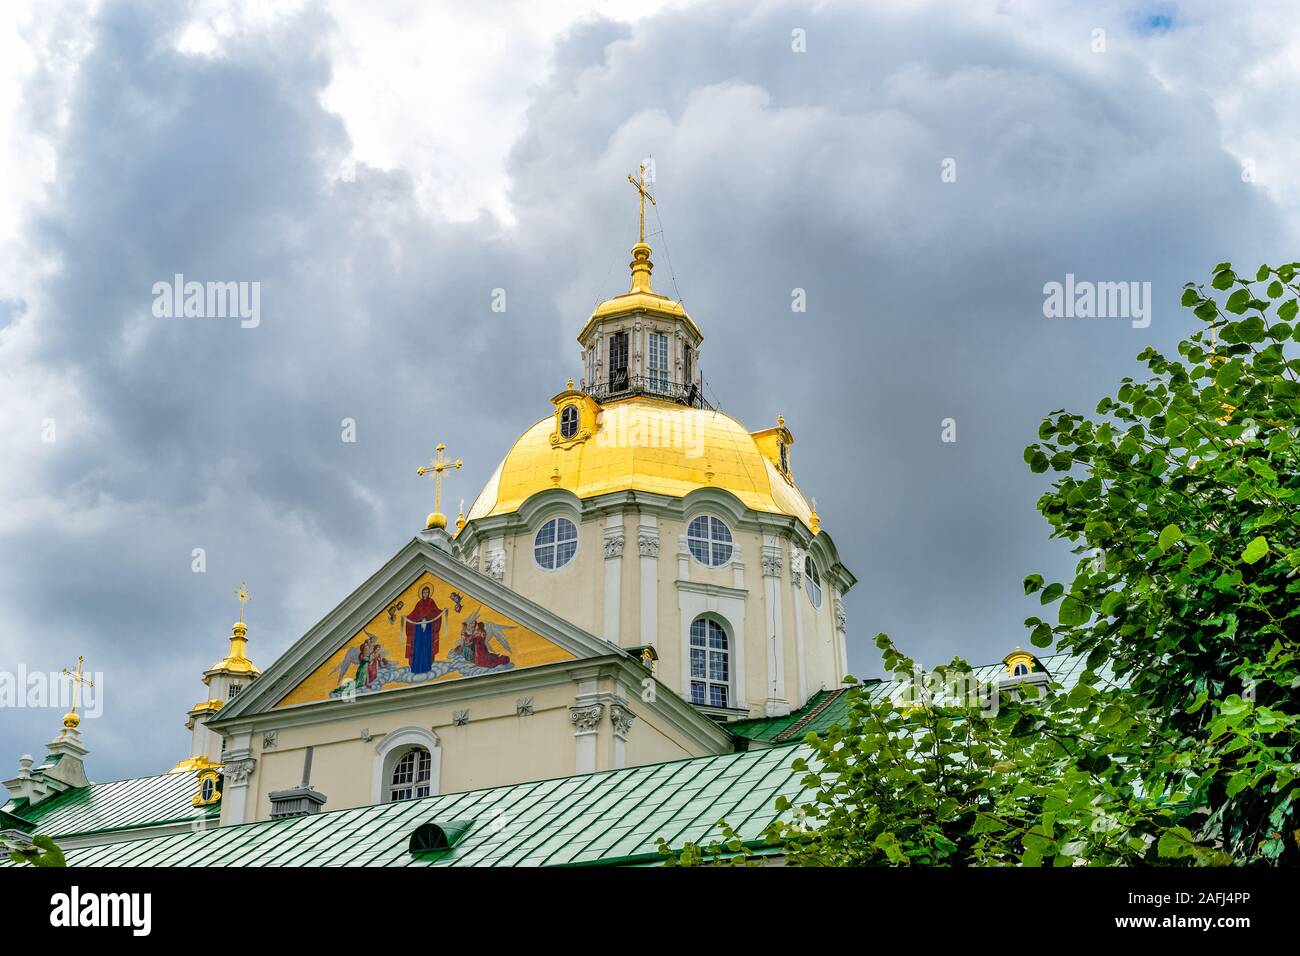 La partie supérieure de la superbe cathédrale de la Dormition orthodoxe Baroque de Pochayiv Lavra en Ukraine. Toit et dôme doré avec une croix dans le ciel nuageux dar Banque D'Images